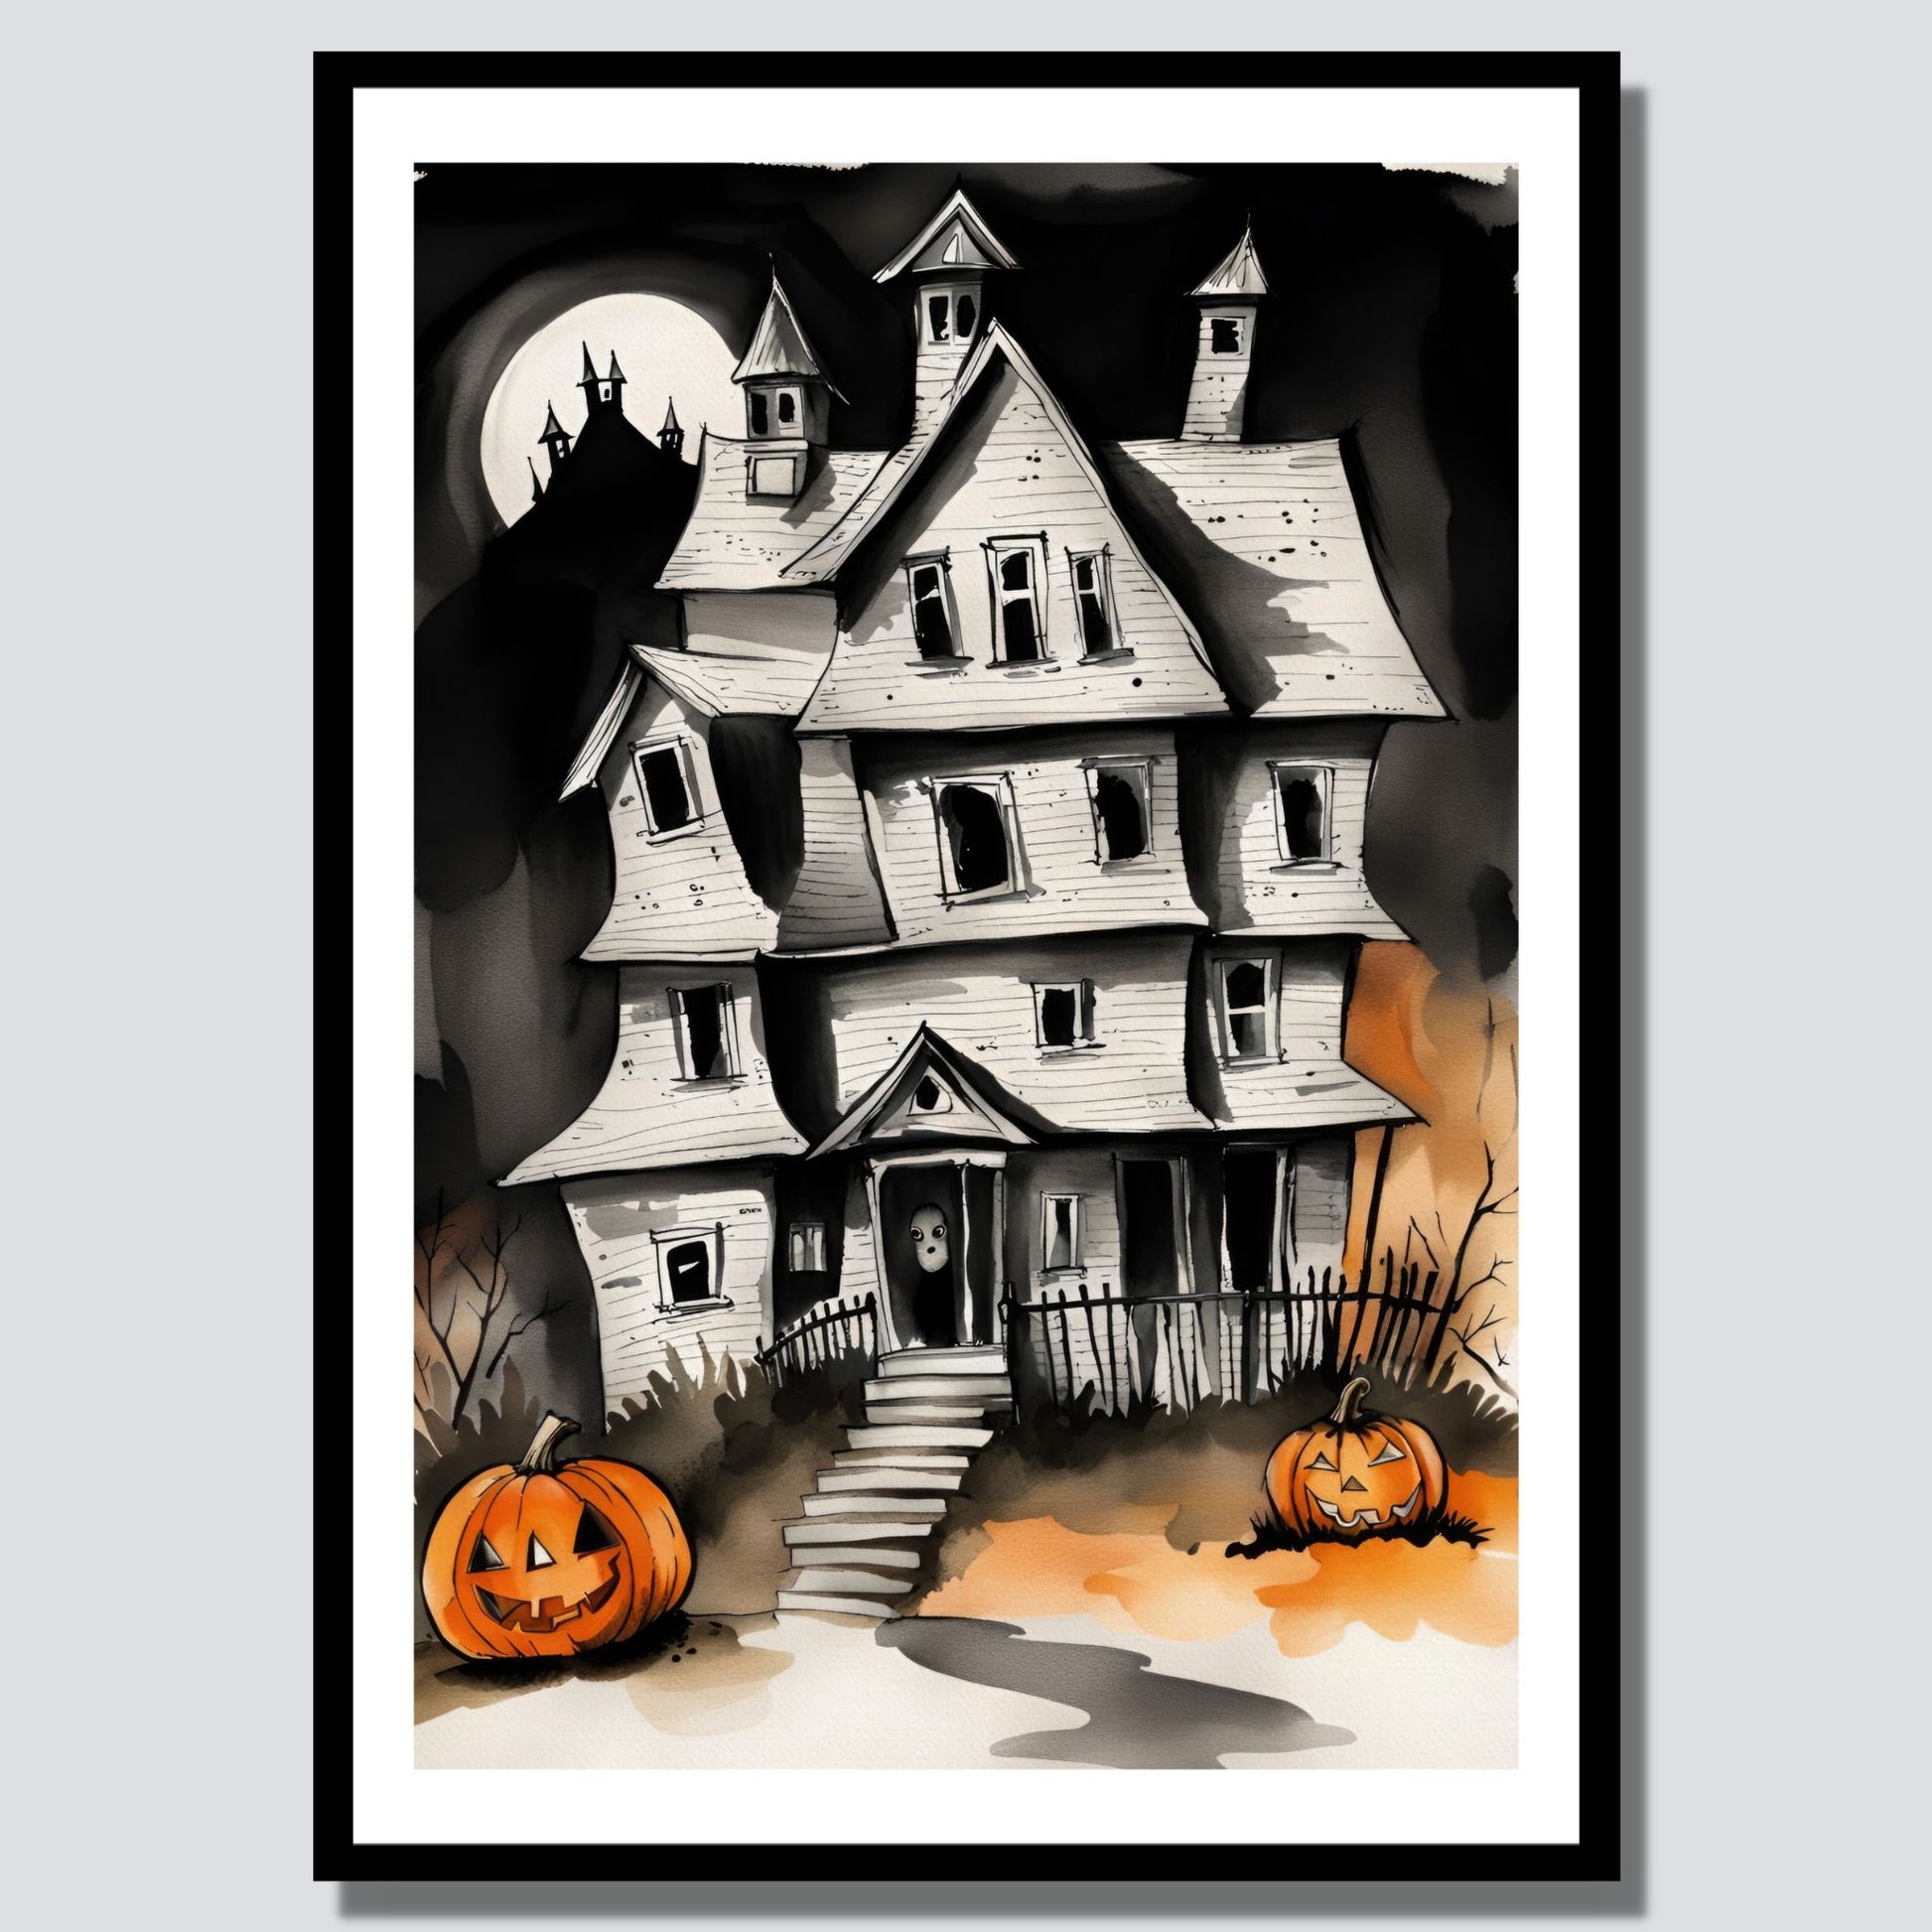 Creepy og kul halloweenplakat. Motivet som er i cartoon forestiller et spøkelseshus